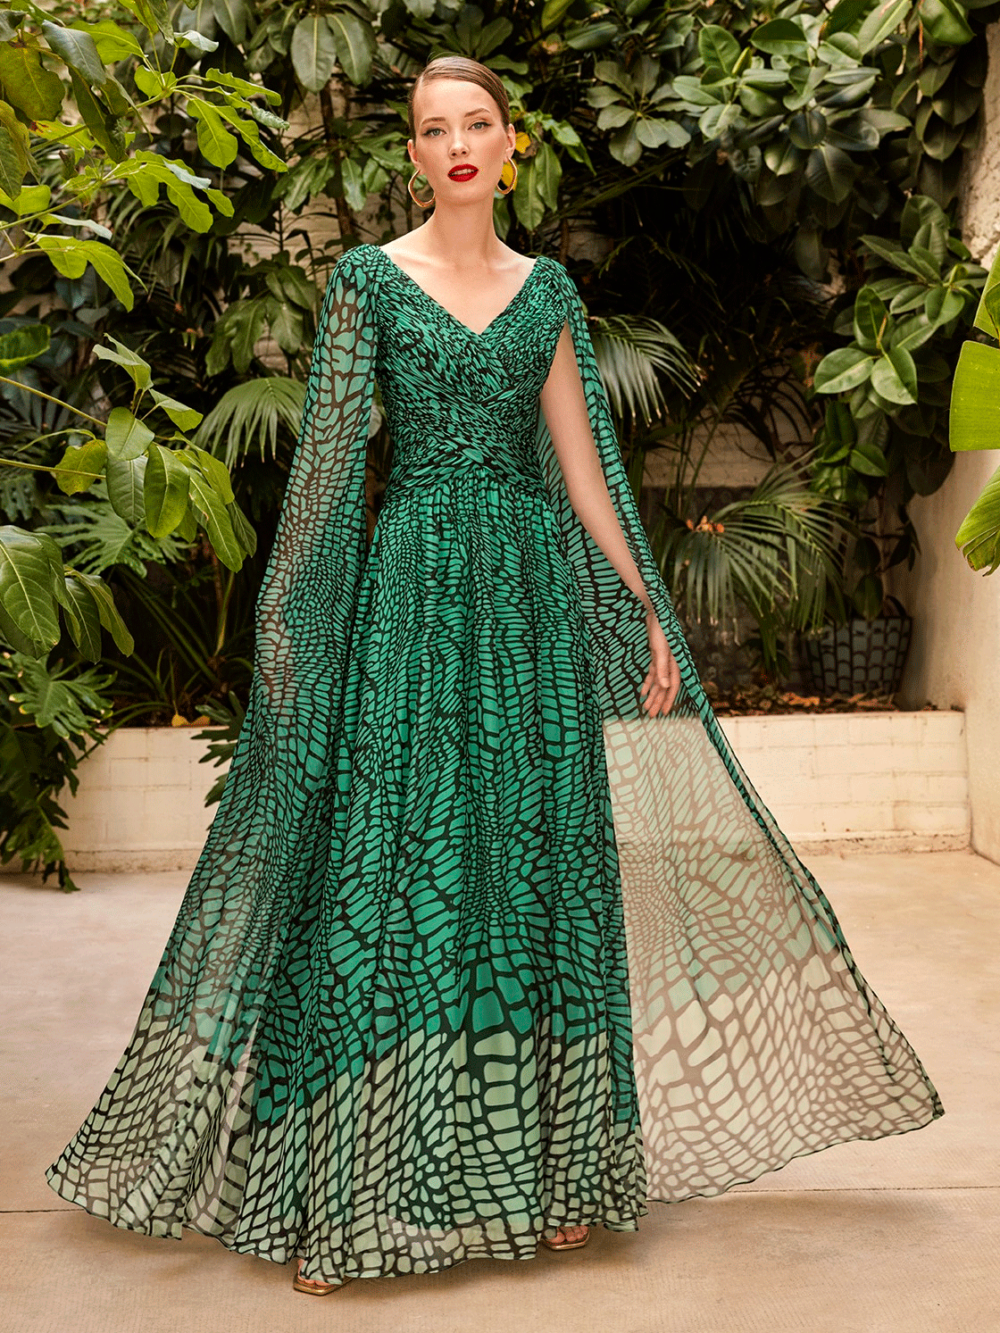 Vestido largo de fiesta verde estampado Carla Ruíz en gusgusboutique vestidos largos fiesta, damas honor, vestido madrina, vestidos invitada.